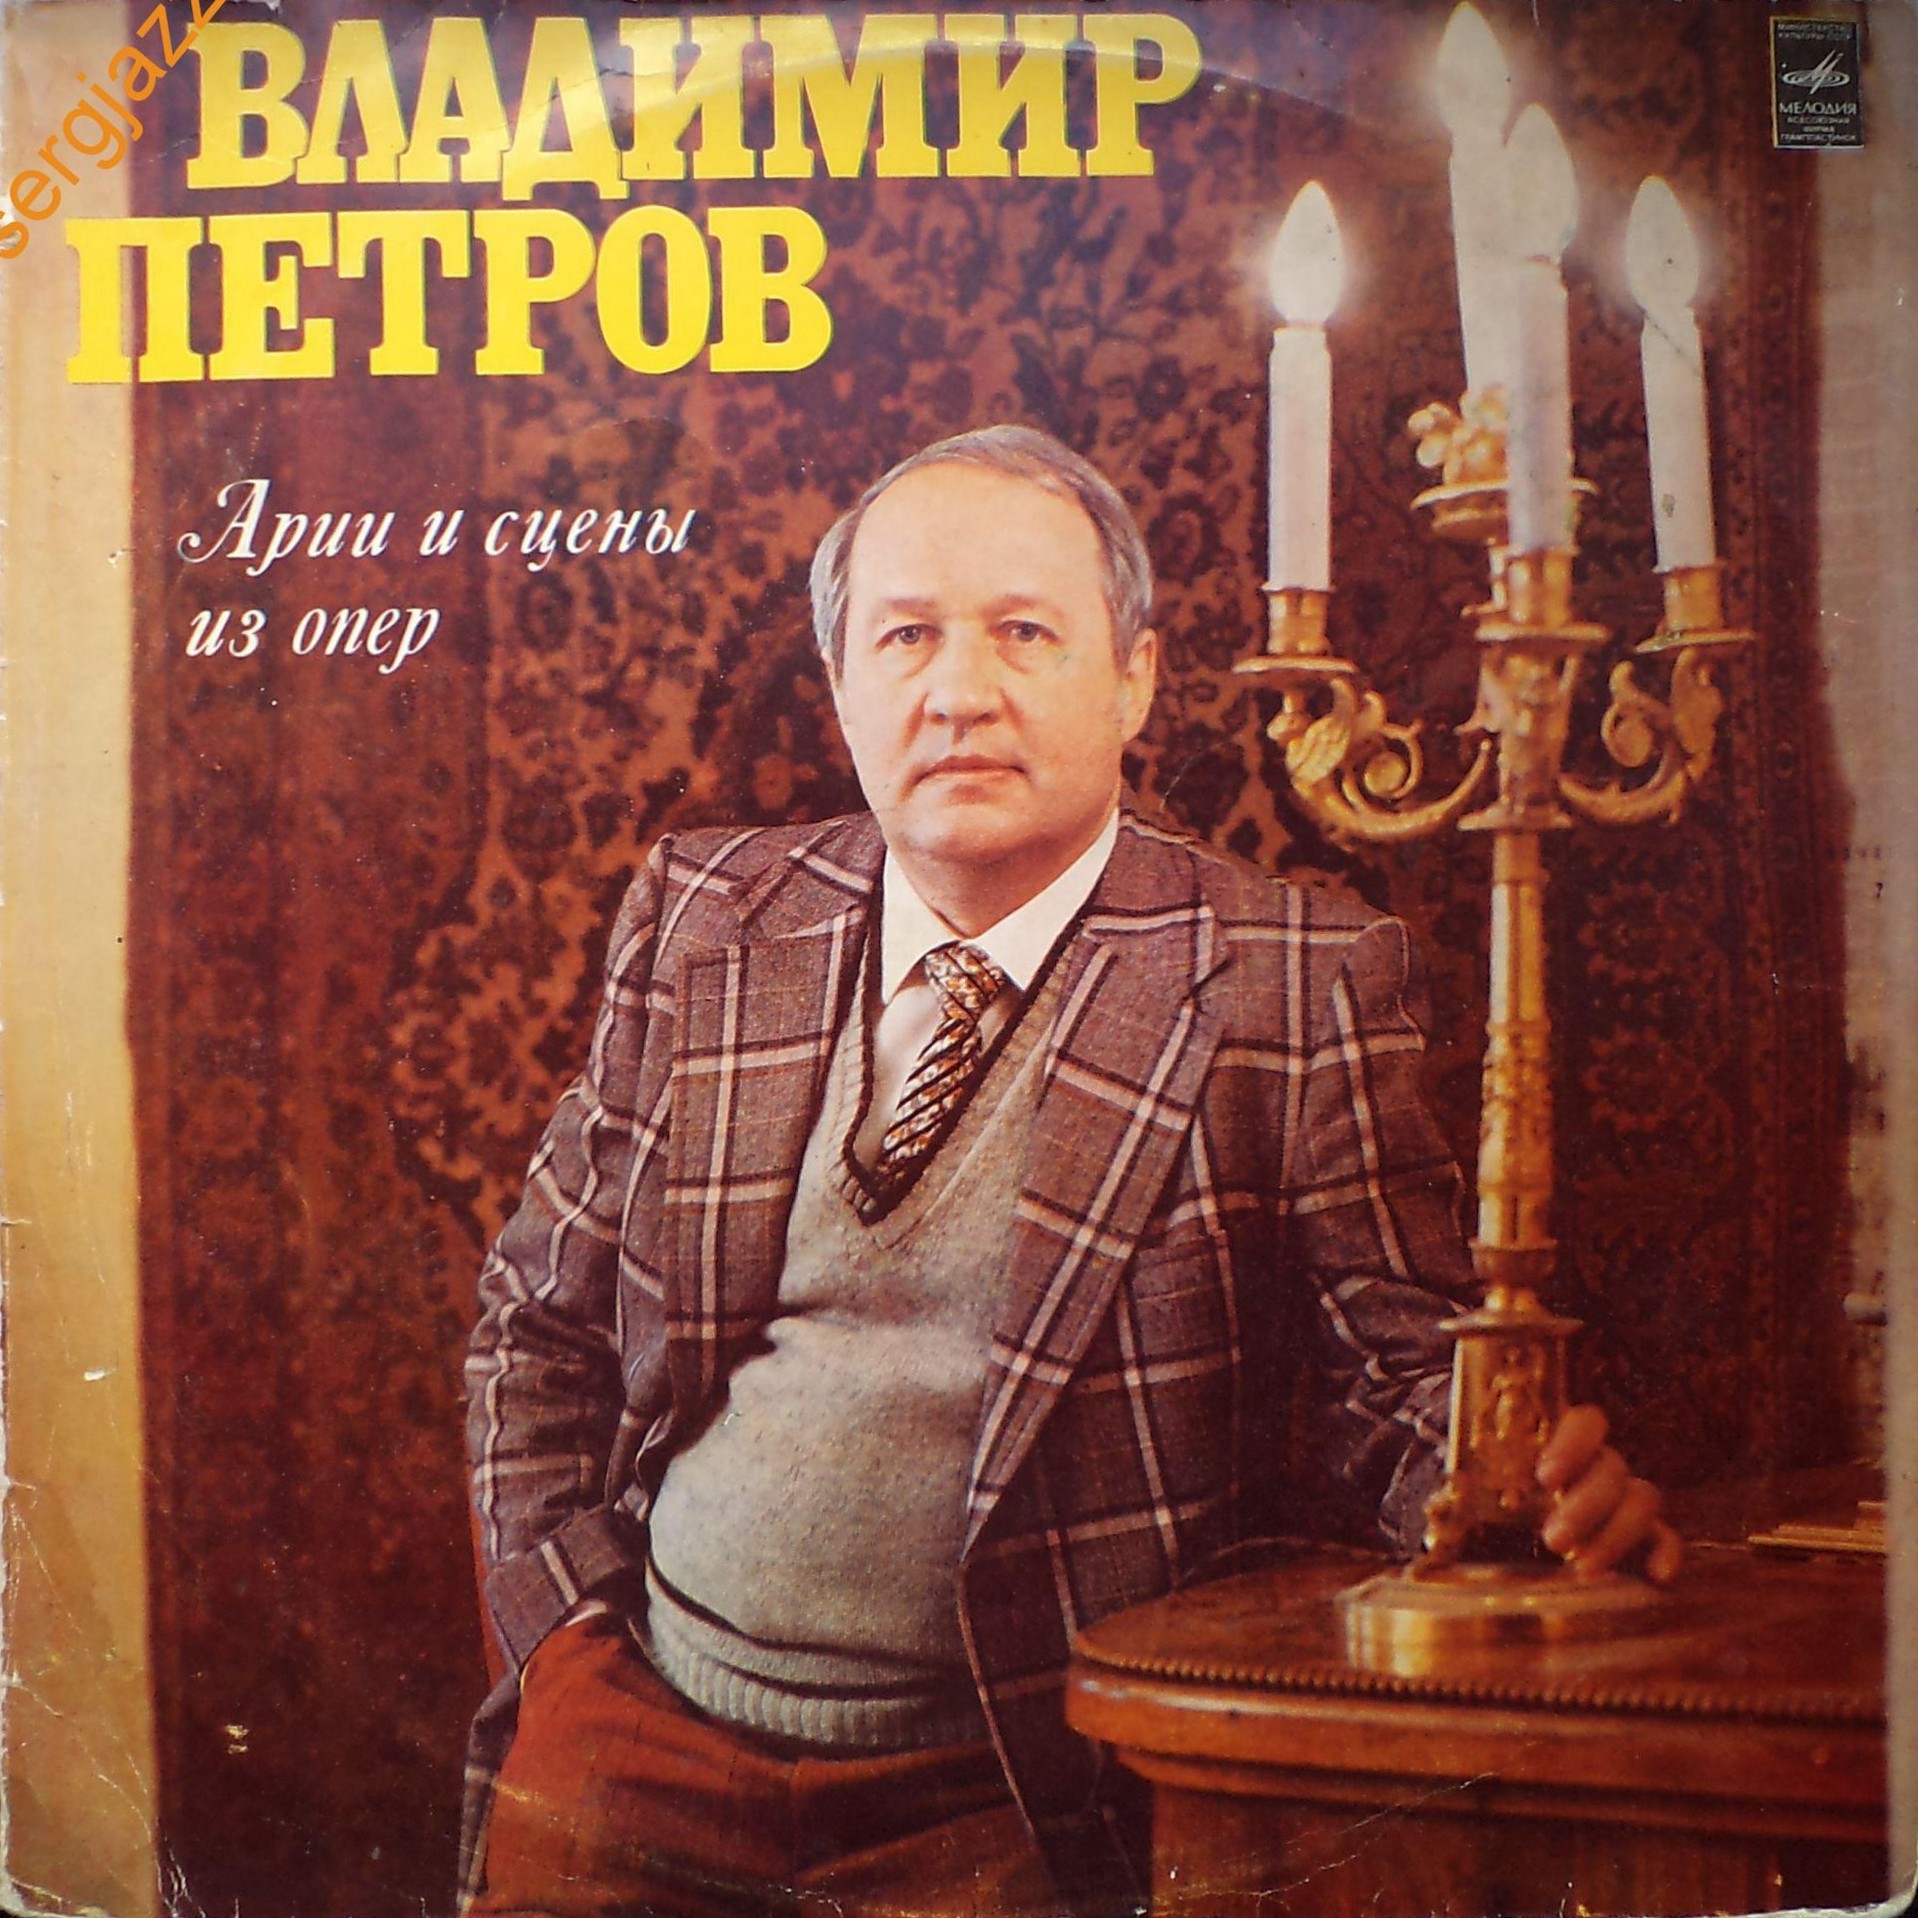 Владимир ПЕТРОВ, тенор